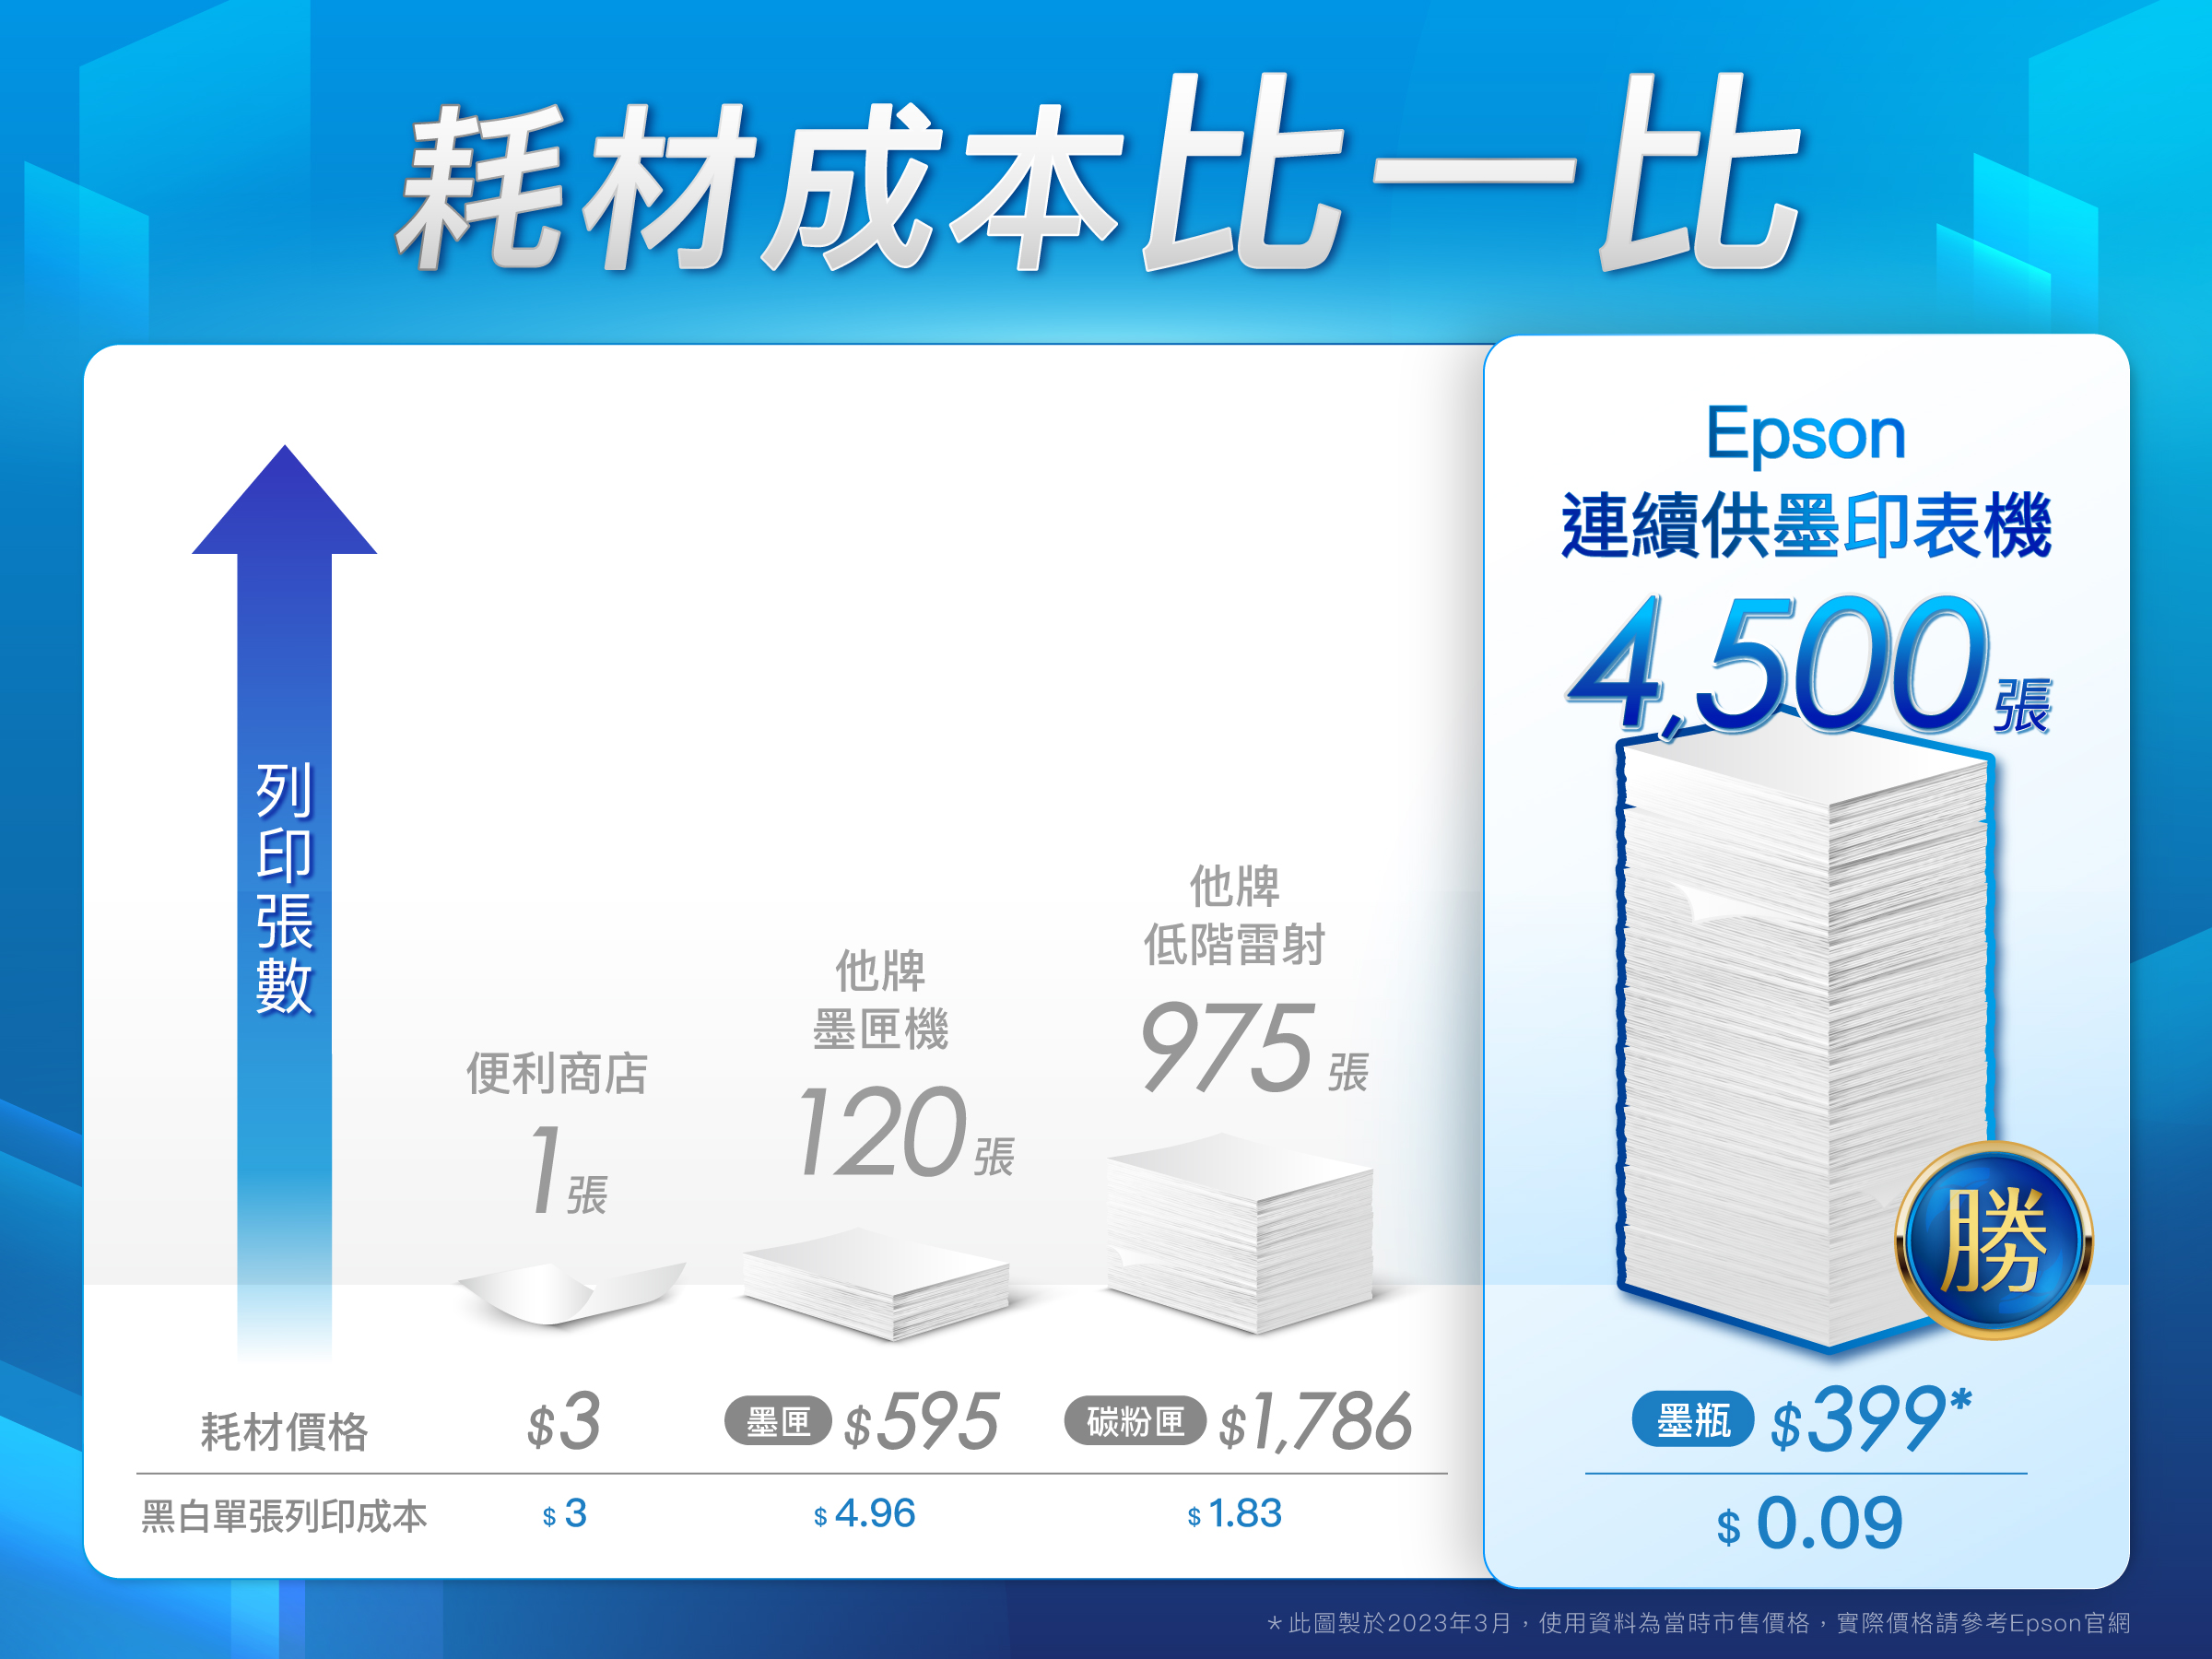 耗材成本比一比Epson連續供墨印表機4,500他牌墨機便利商店他牌低階雷射975120勝耗材價格$3 $595粉匣 $1,786 $399*黑白單張列印成本$ 3$4.96$ 1.83$ 0.09*此圖製於2023年3月,使用資料為當時市售價格,實際價格請參考Epson官網